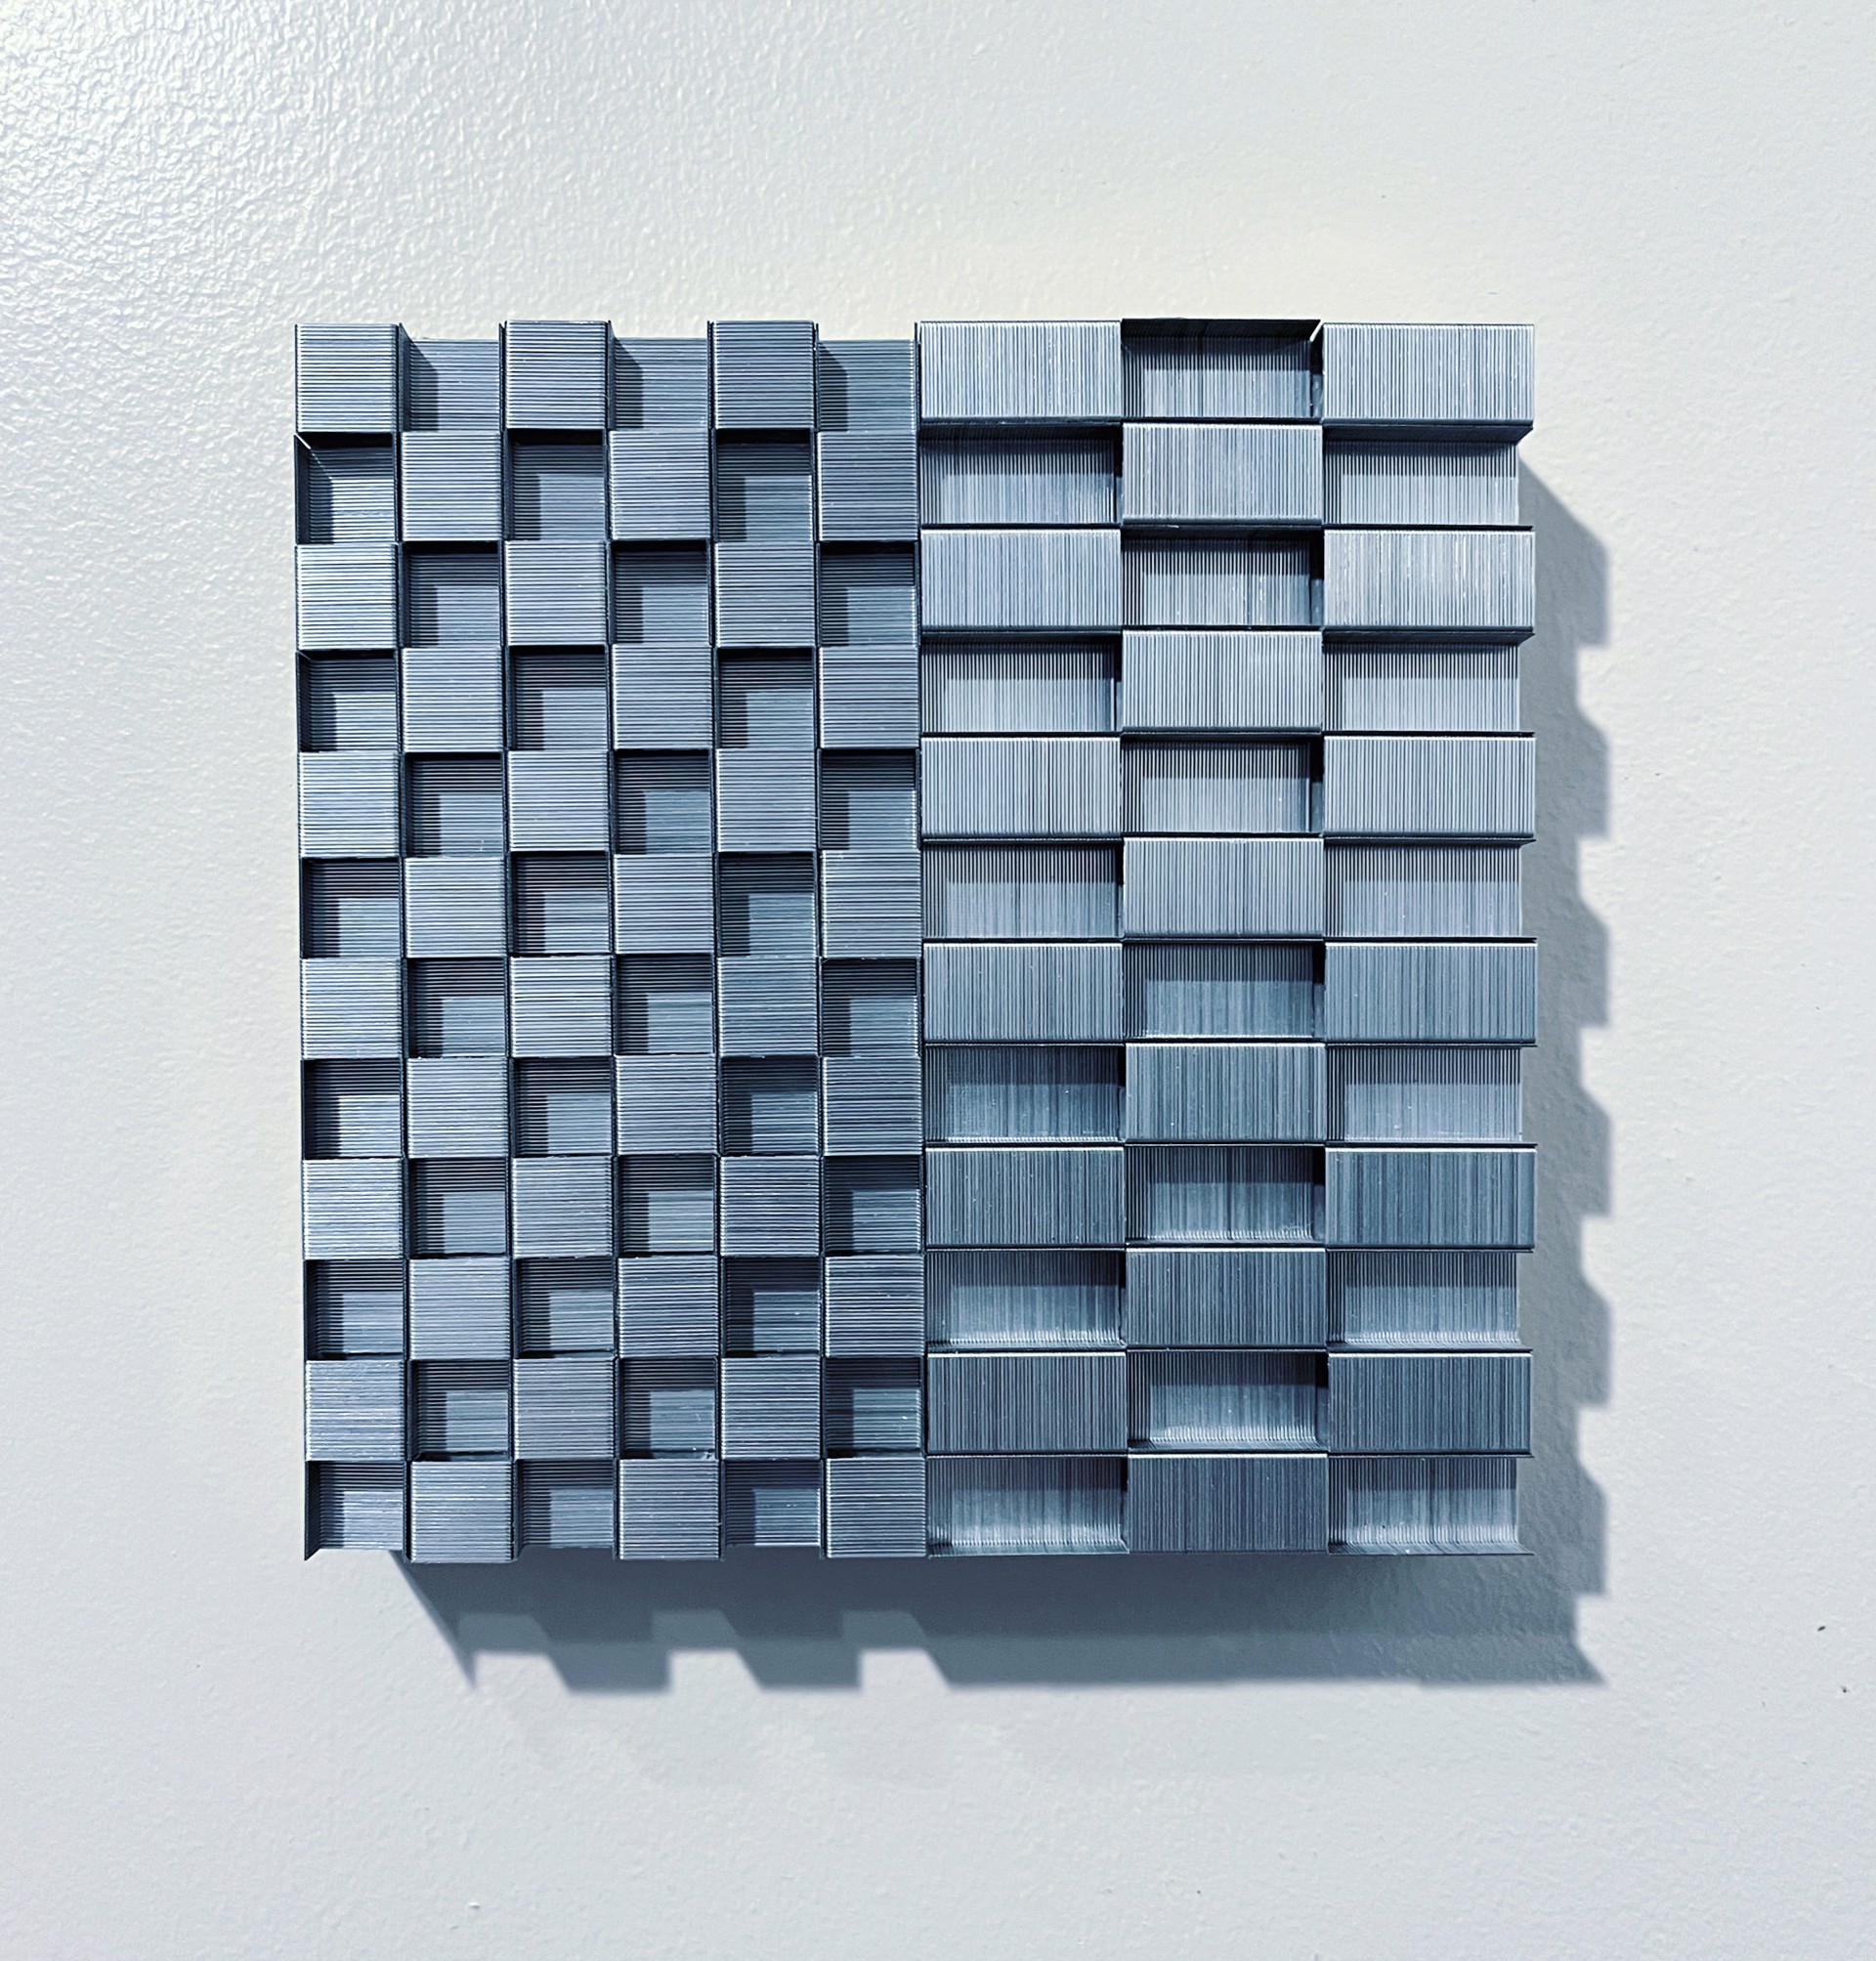 “Checkerboard Variation 6x6 No. 8" by Evan Stoler